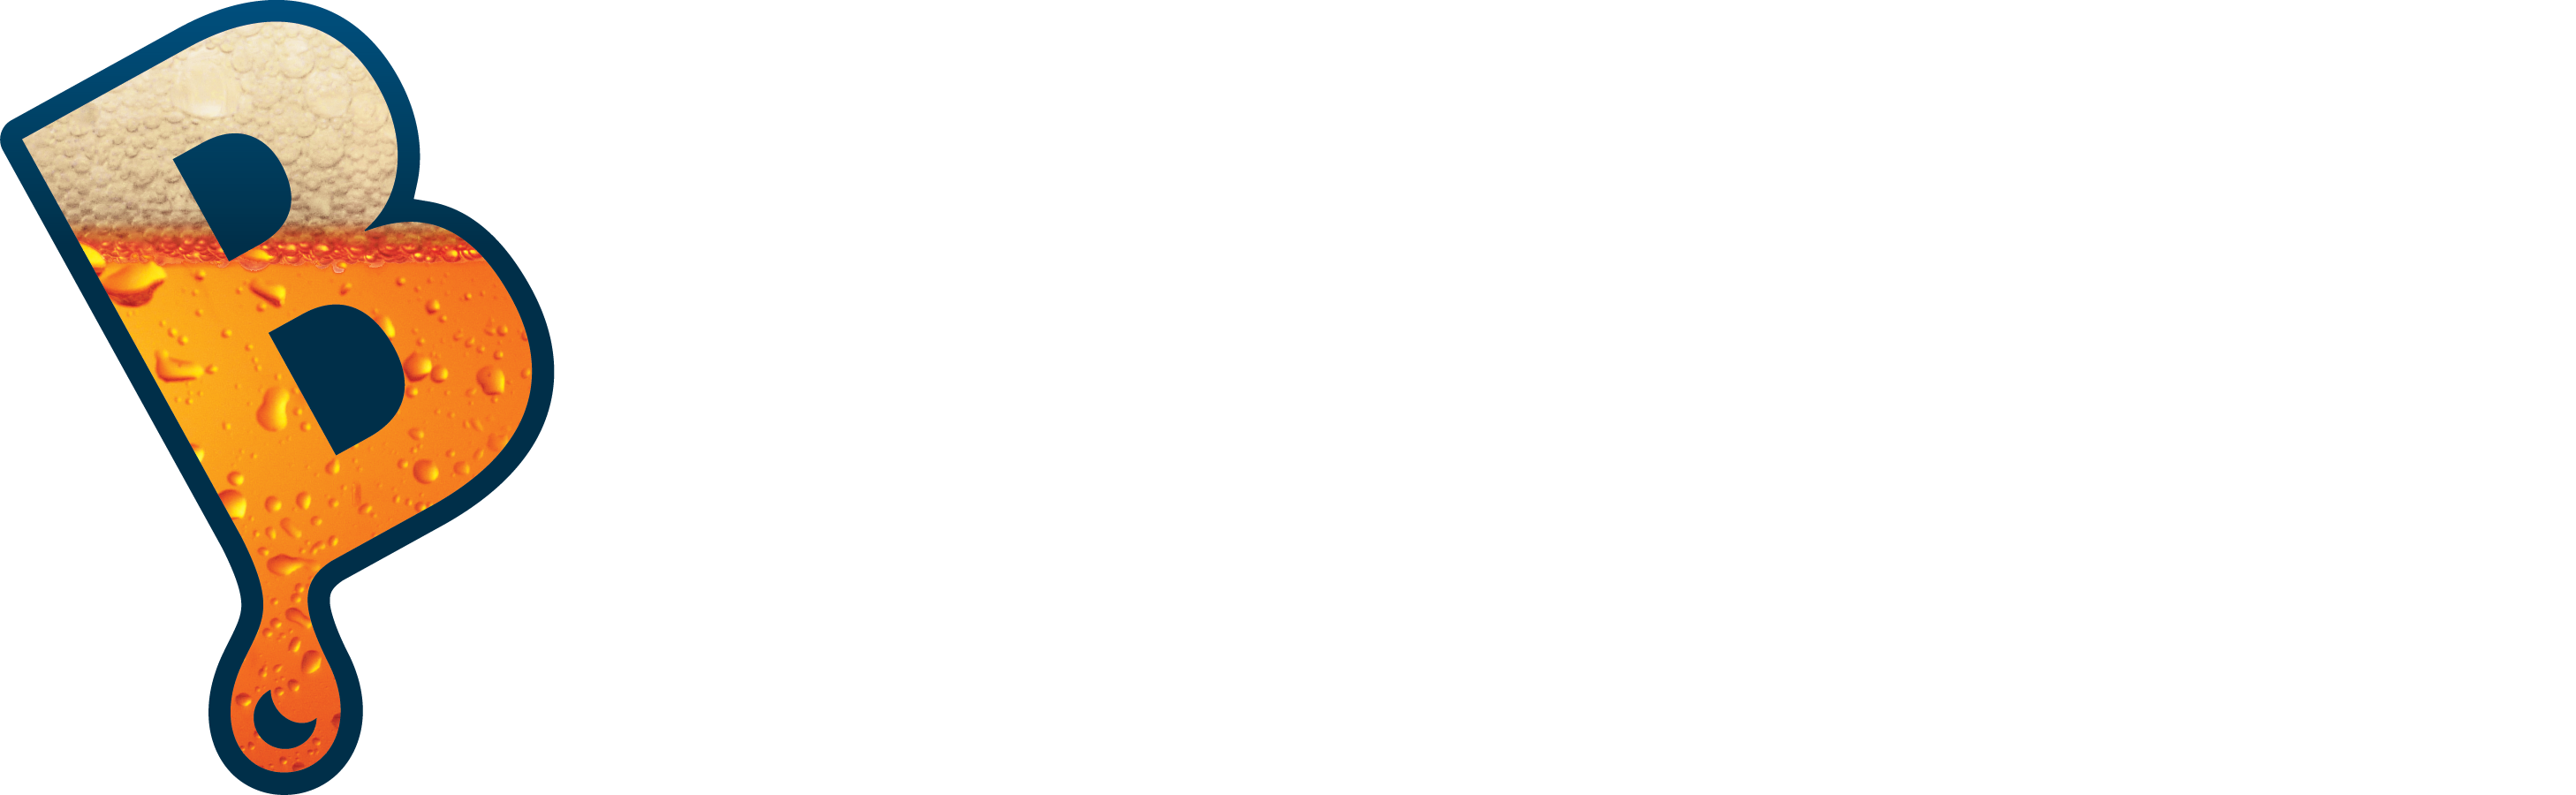 Brewer's Best logo